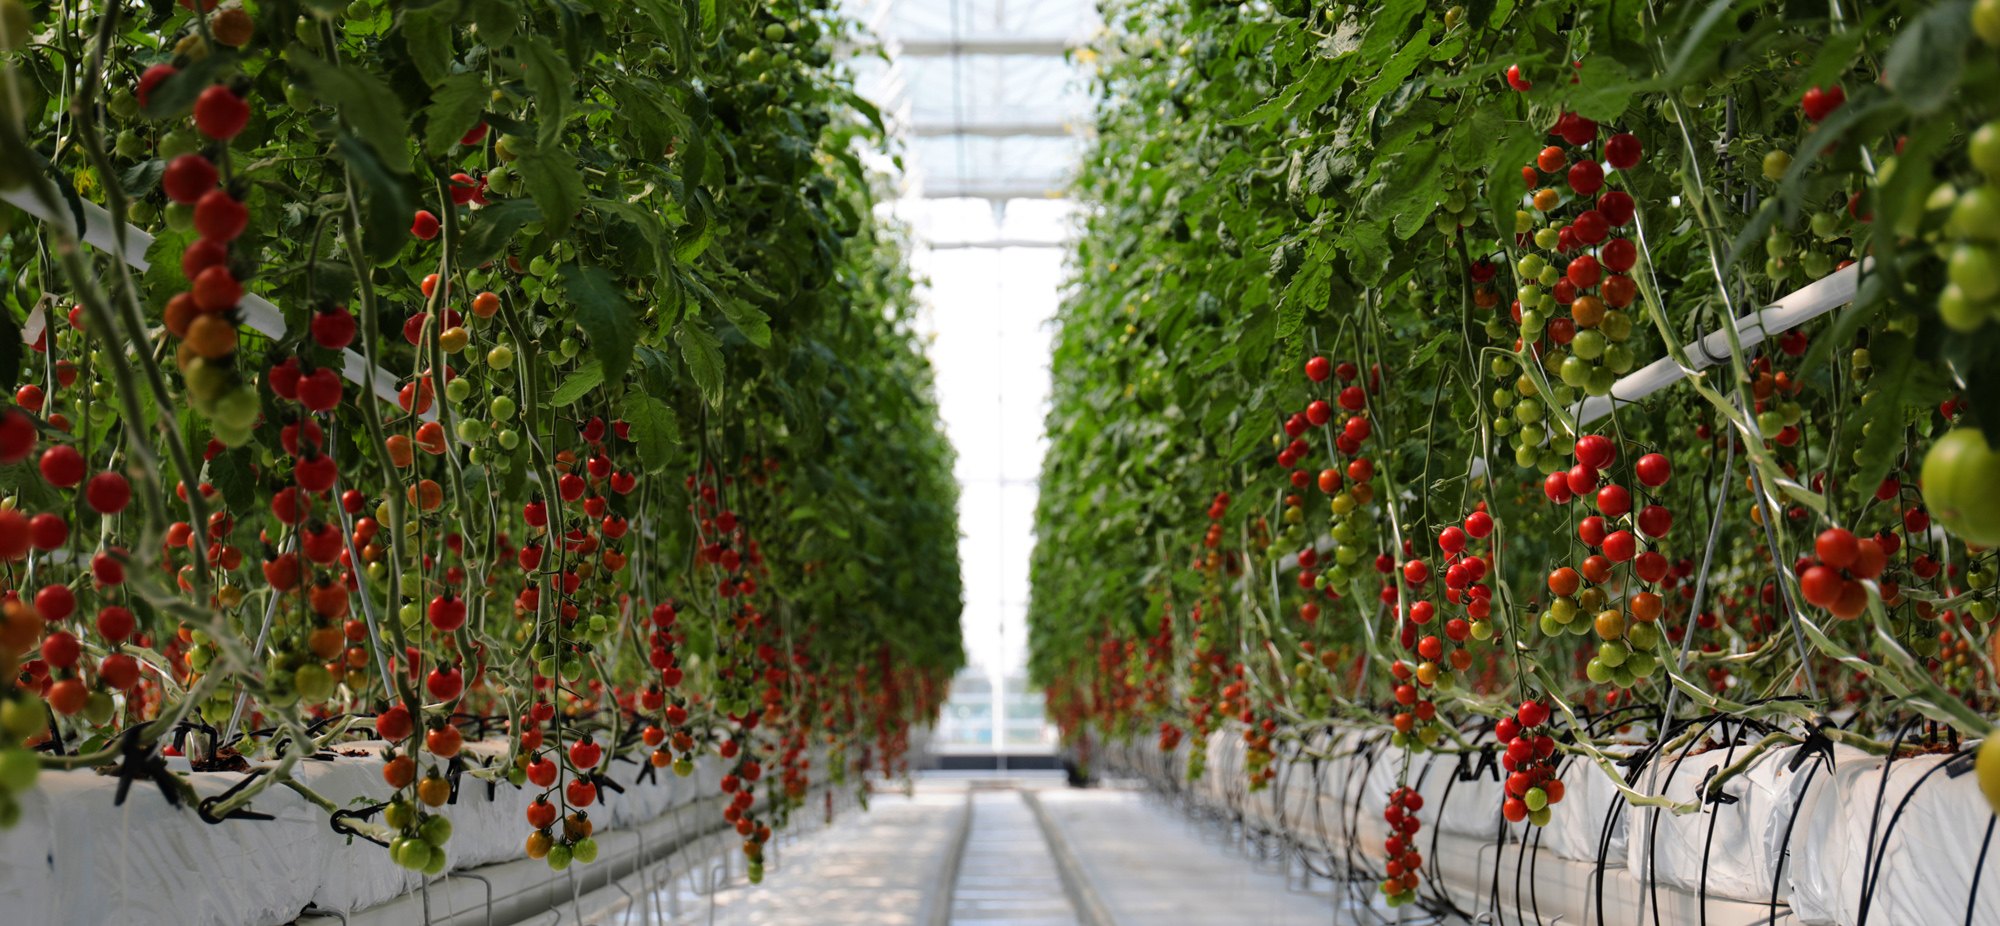 寿光市蔬菜小镇温室番茄栽培。